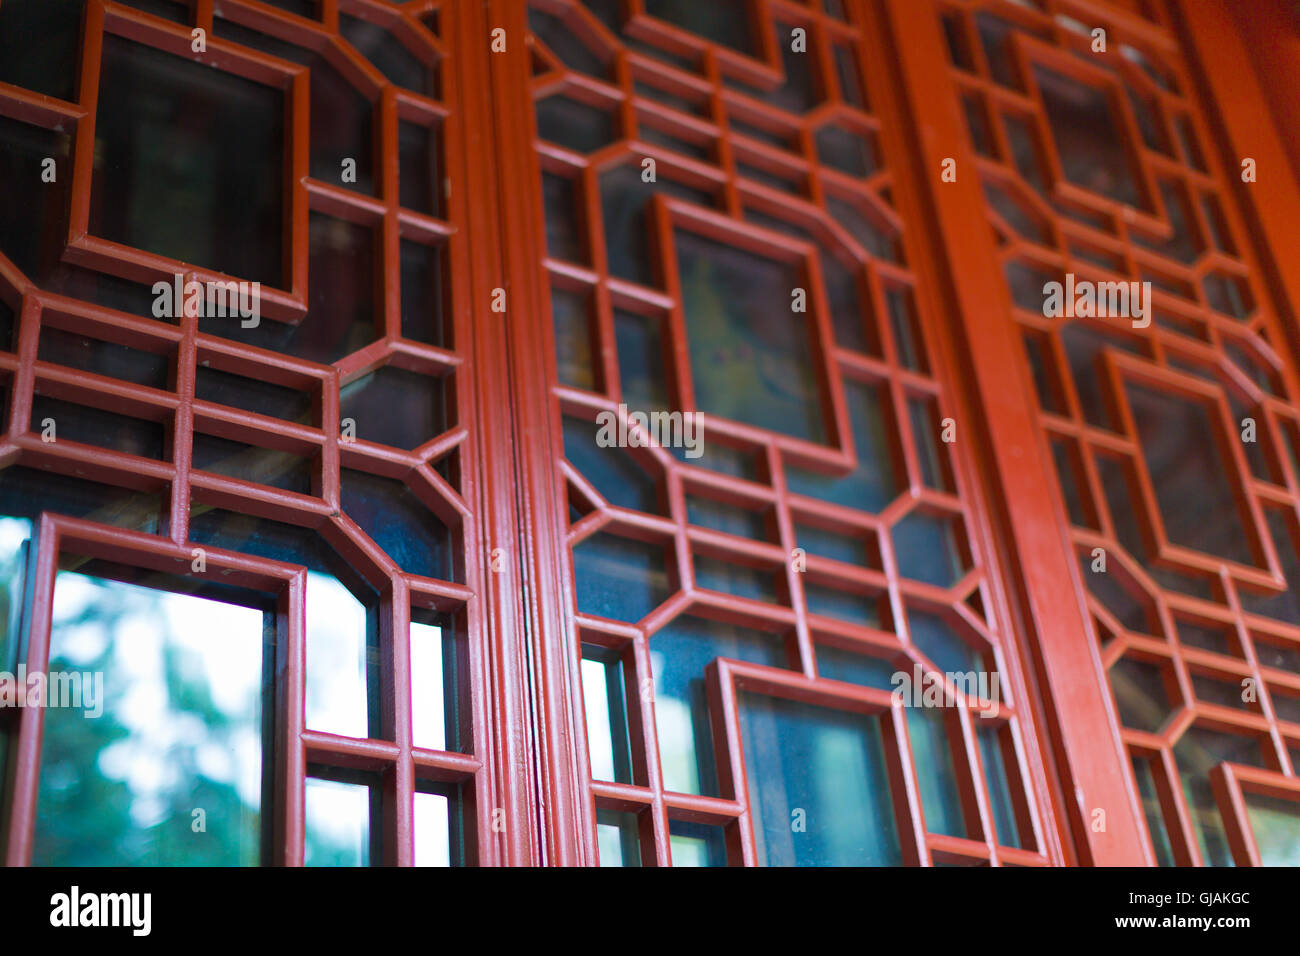 Red Door in Japan house Stock Photo